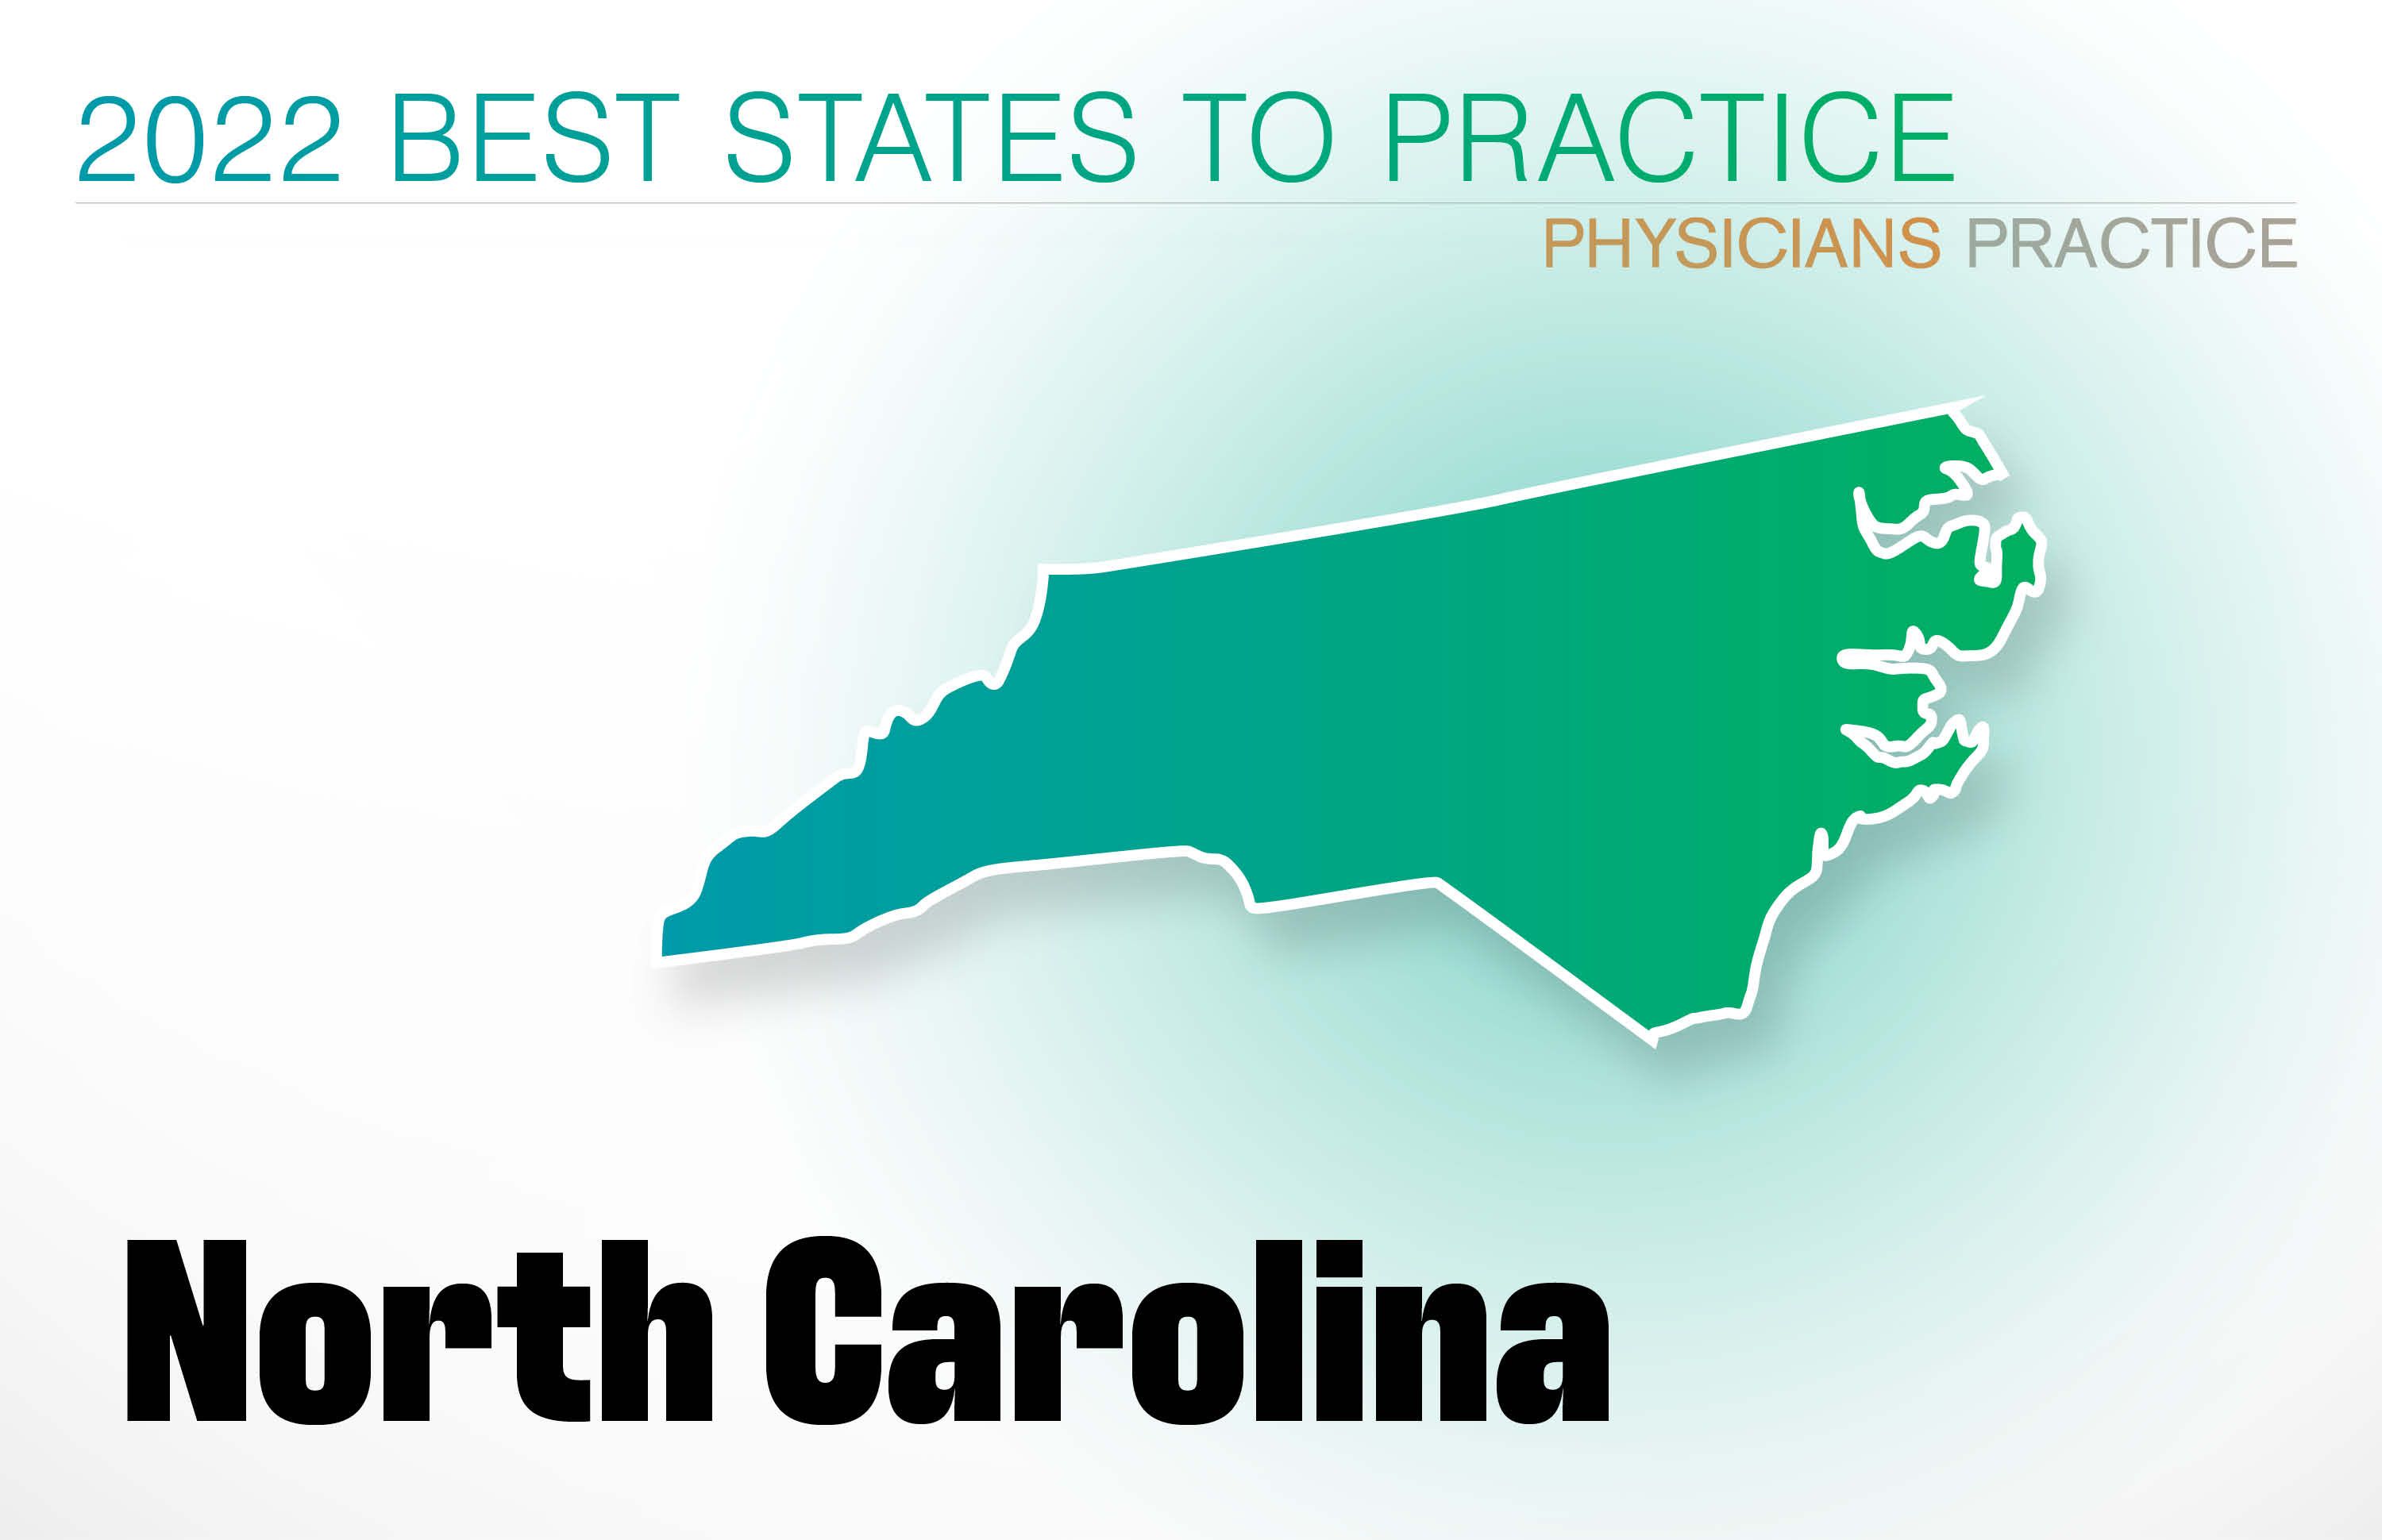 #12 North Carolina